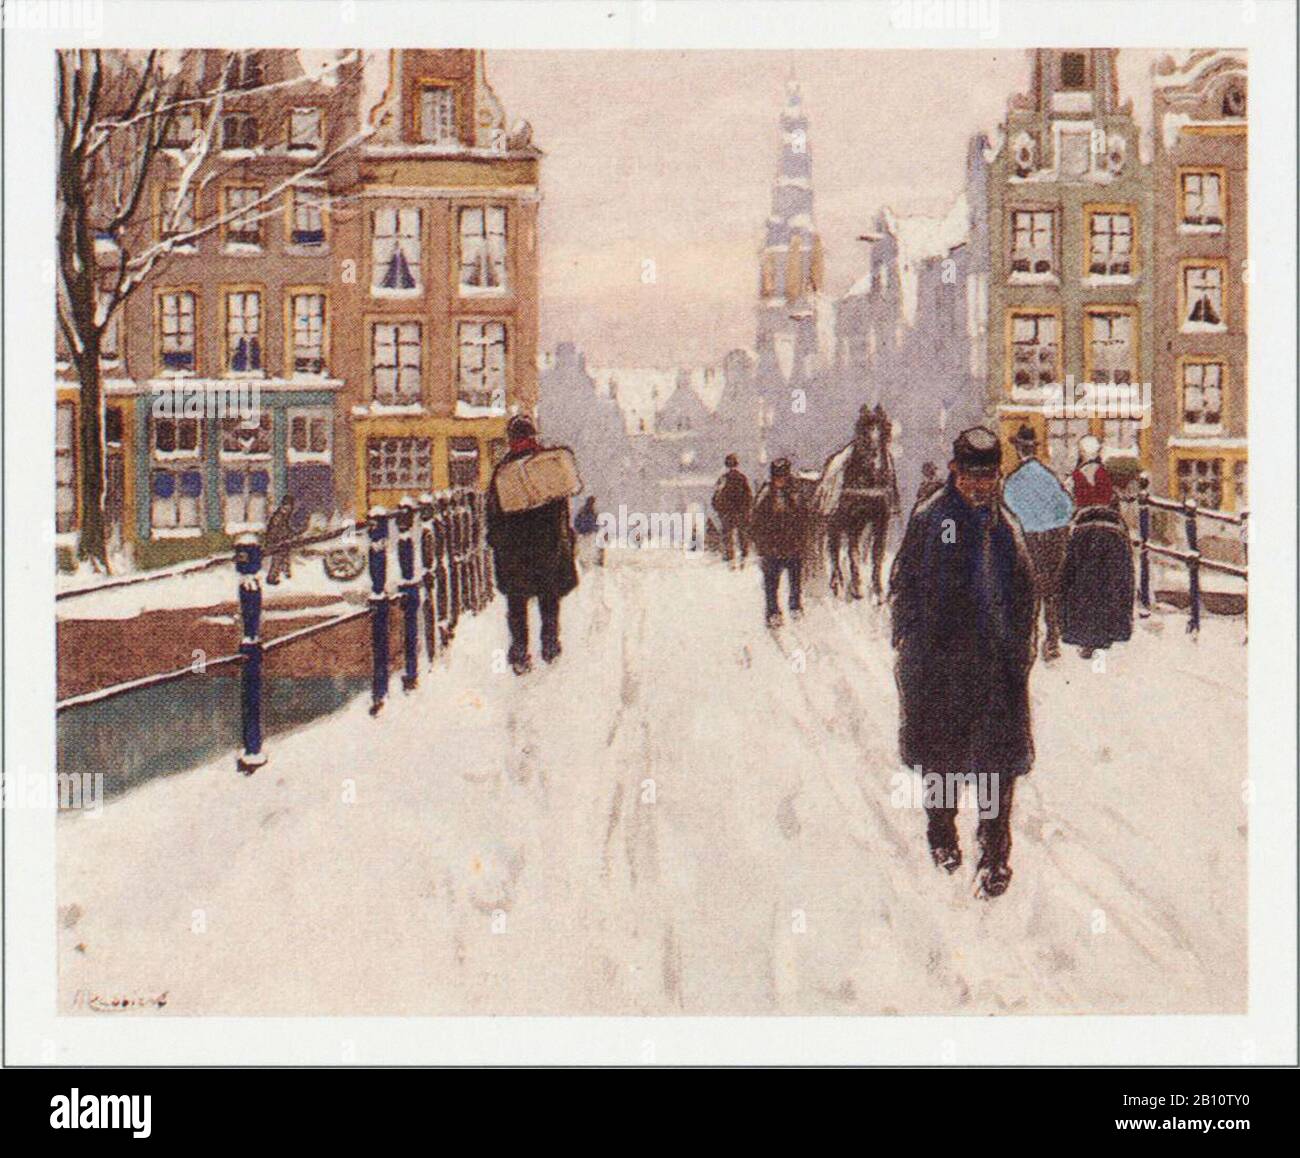 Amsterdam raadhuisstraat - Illustrazione di Henri Cassiers (1858 - 1944) Foto Stock